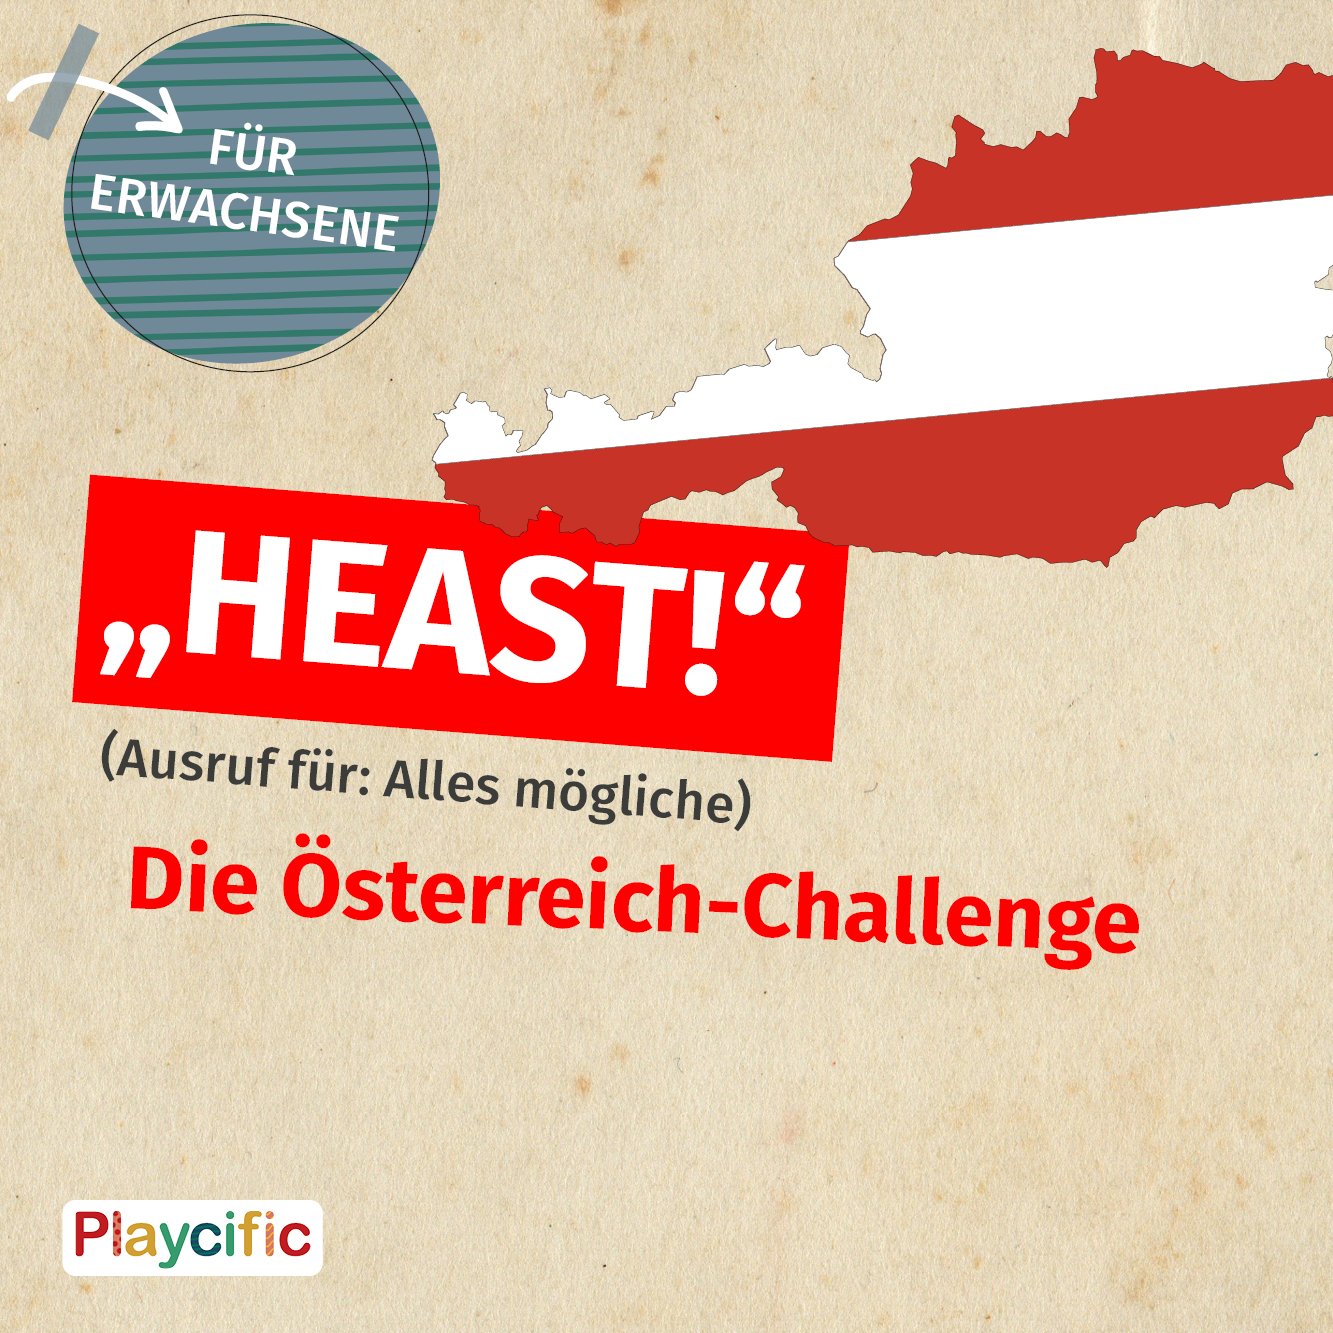 Quiz: Heast! Die Österreich-Challenge